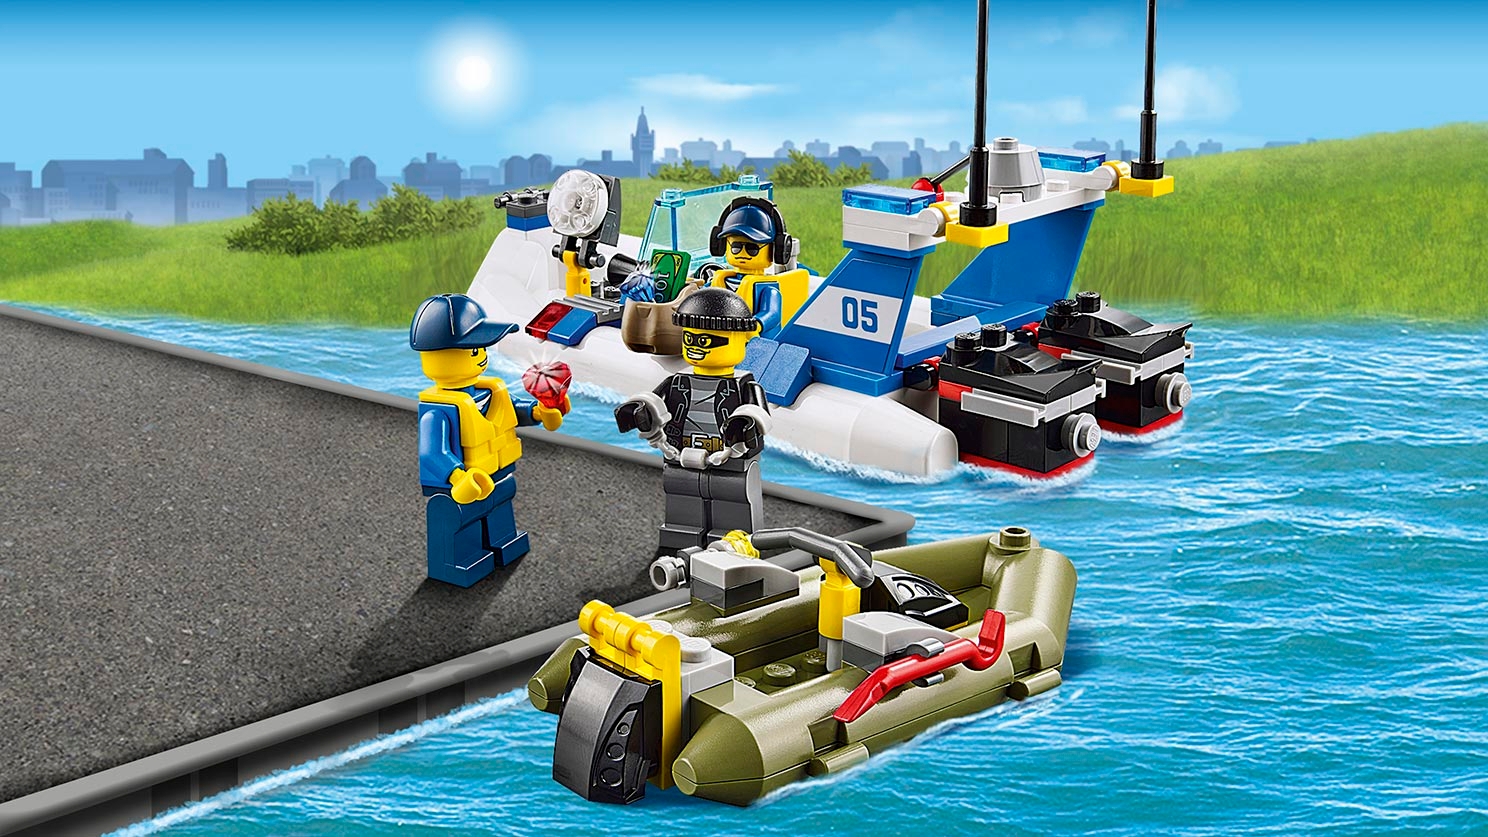 Police Patrol Lego City Sets Lego Com For Kids